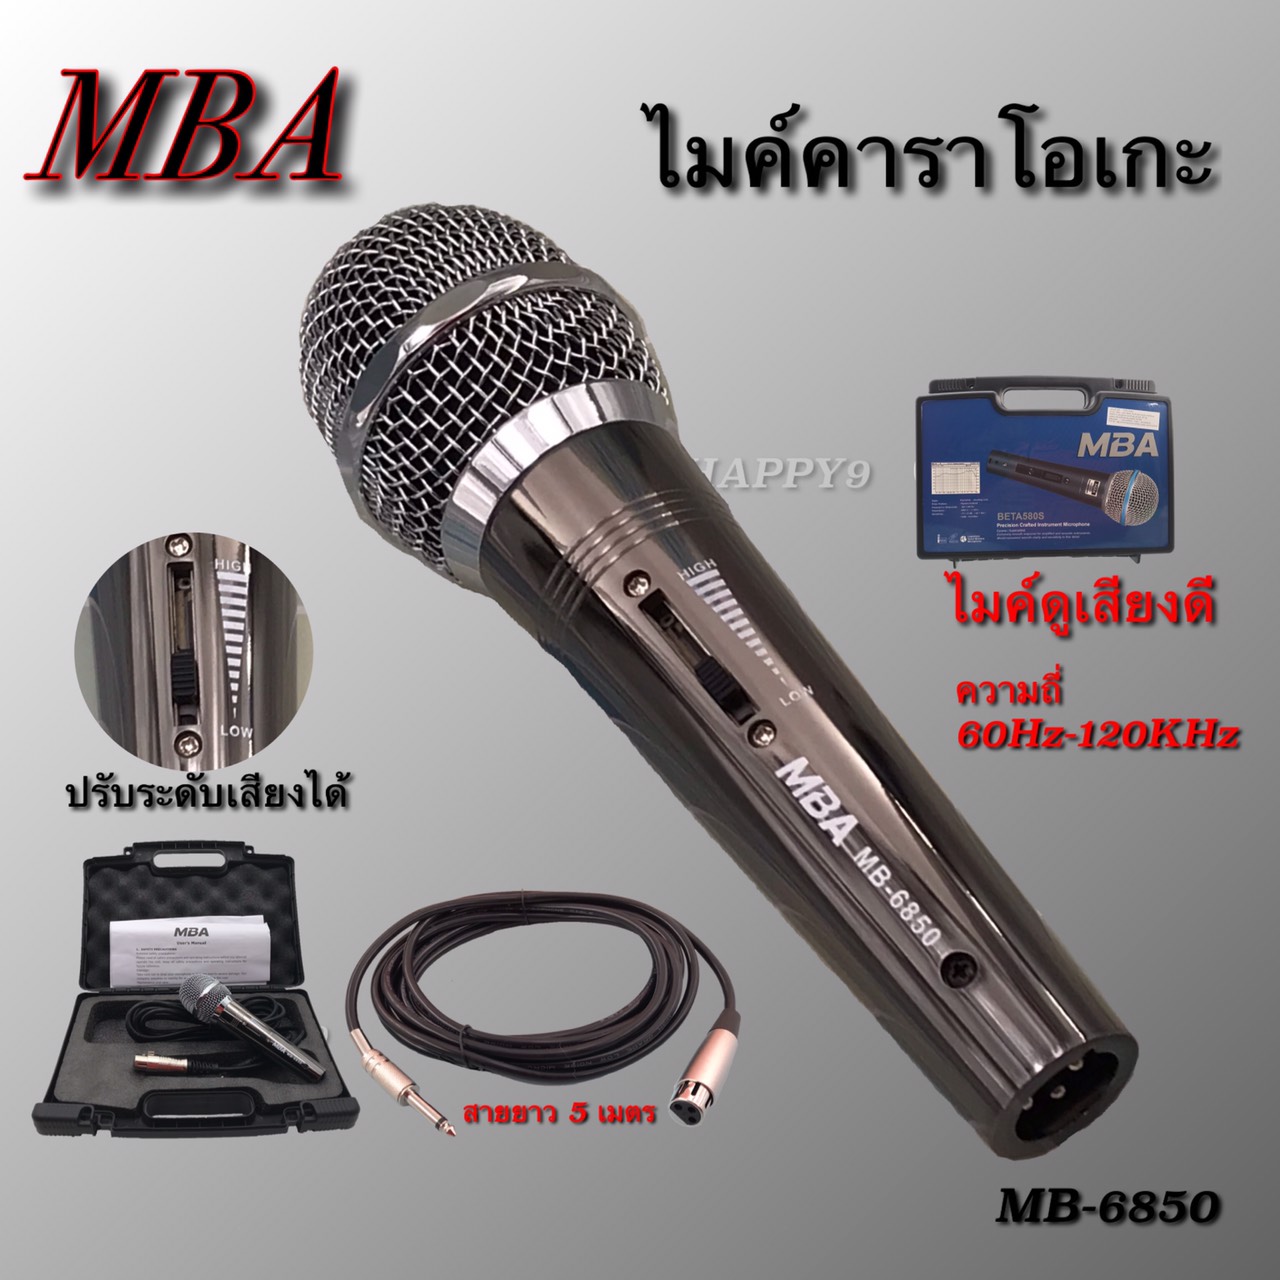 ไมโครโฟน MBA (ปรับโทนเสียง)ไมค์สาย ไมค์คาราโอเกะ ไมค์ถือ ไมค์ร้องเพลง Microphone สายยาว 5 เมตร รุ่น MB6850